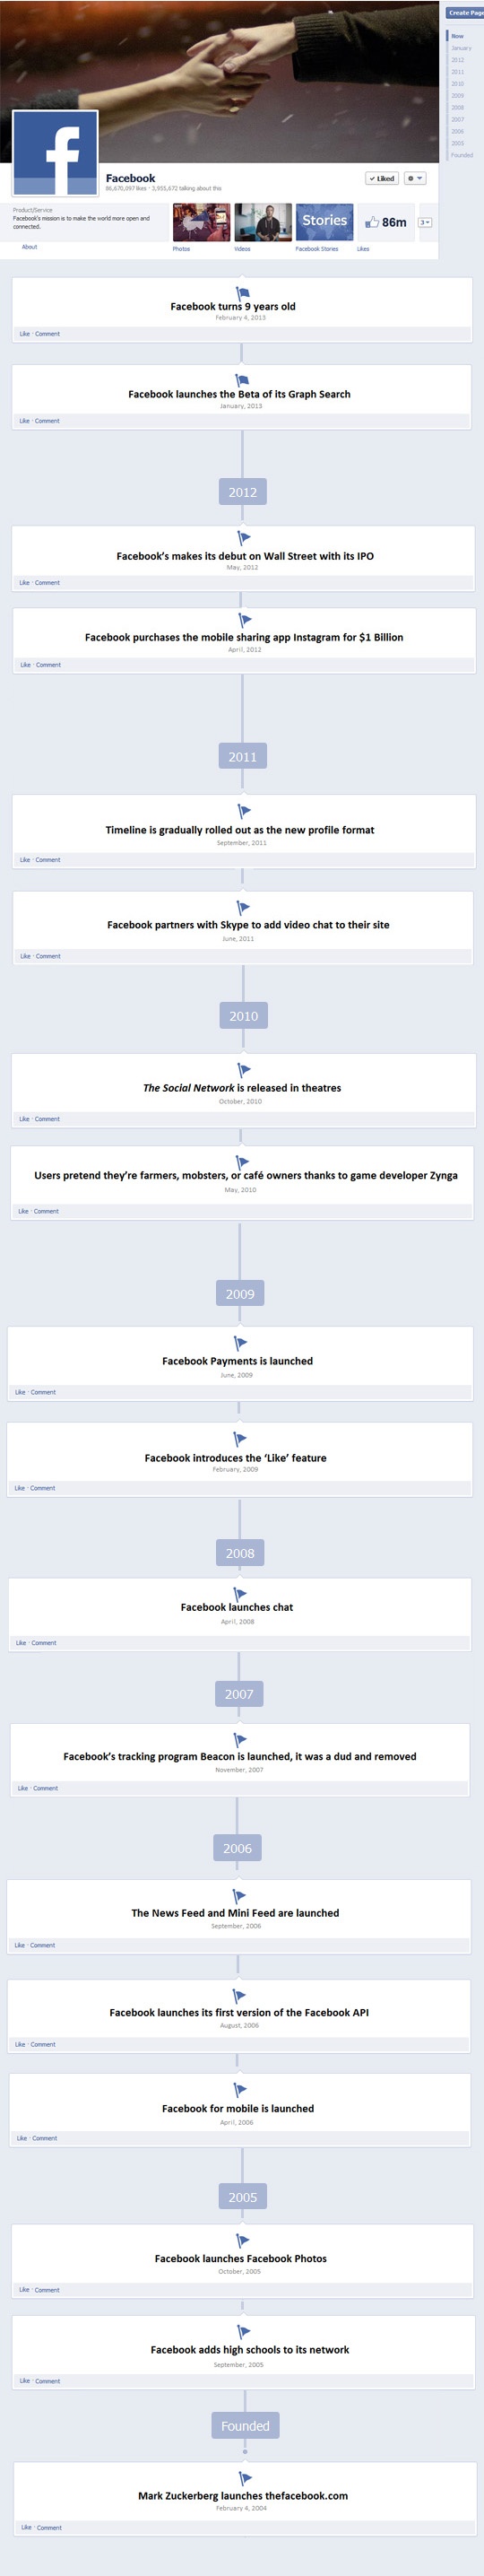 Infogrpahic van de geschiedenis van Facebook